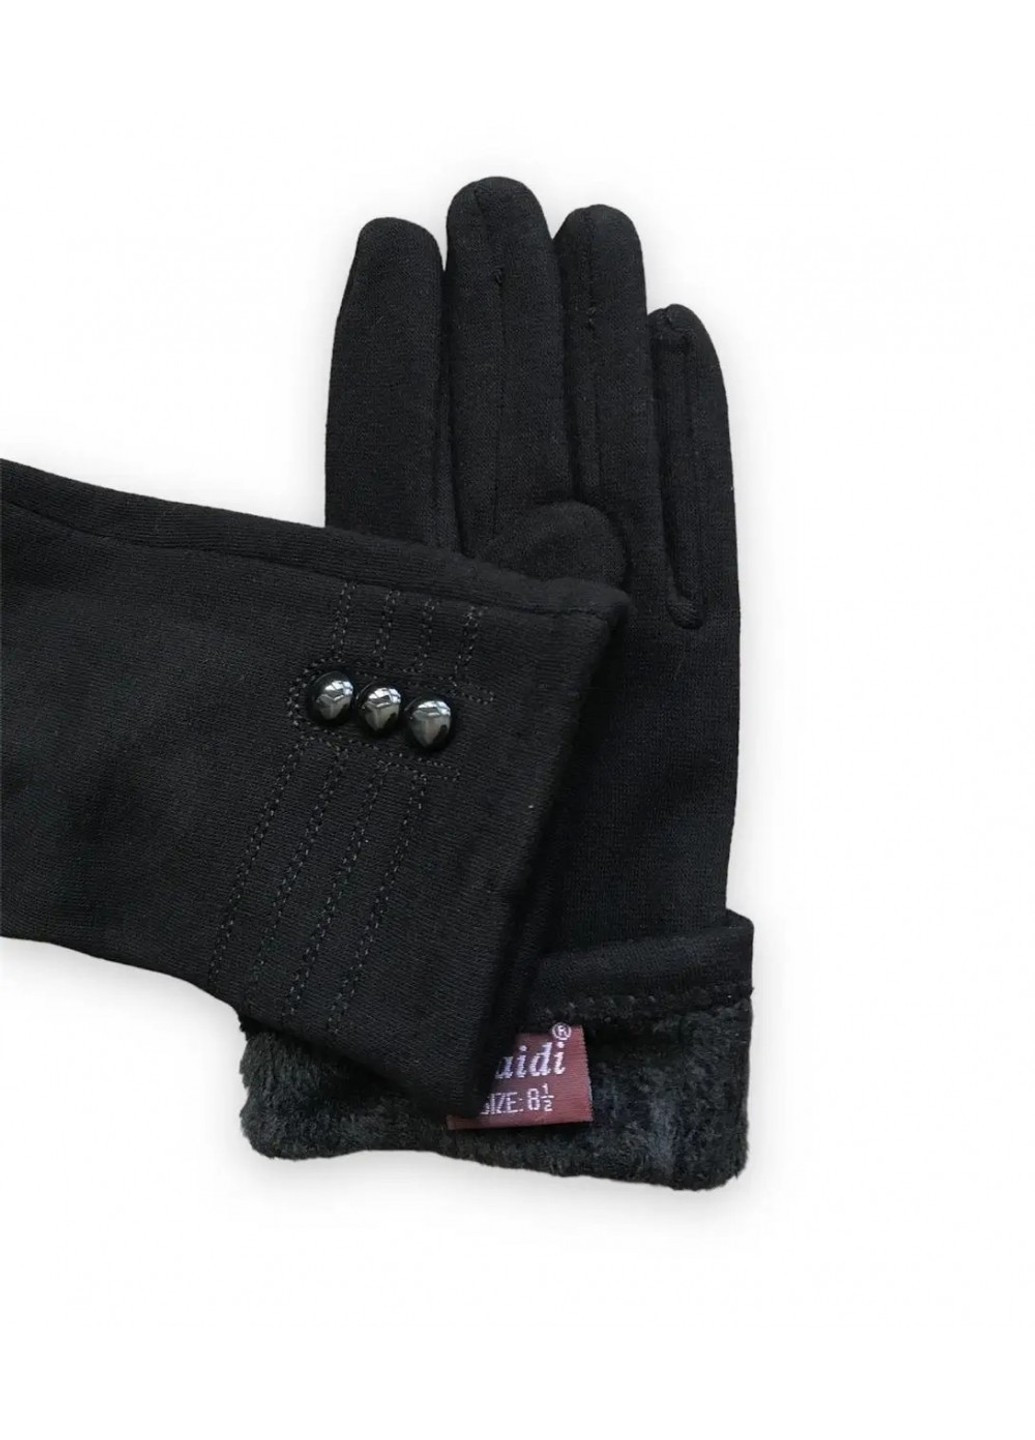 Женские стрейчевые перчатки чёрные 8710s3 L BR-S (261771221)